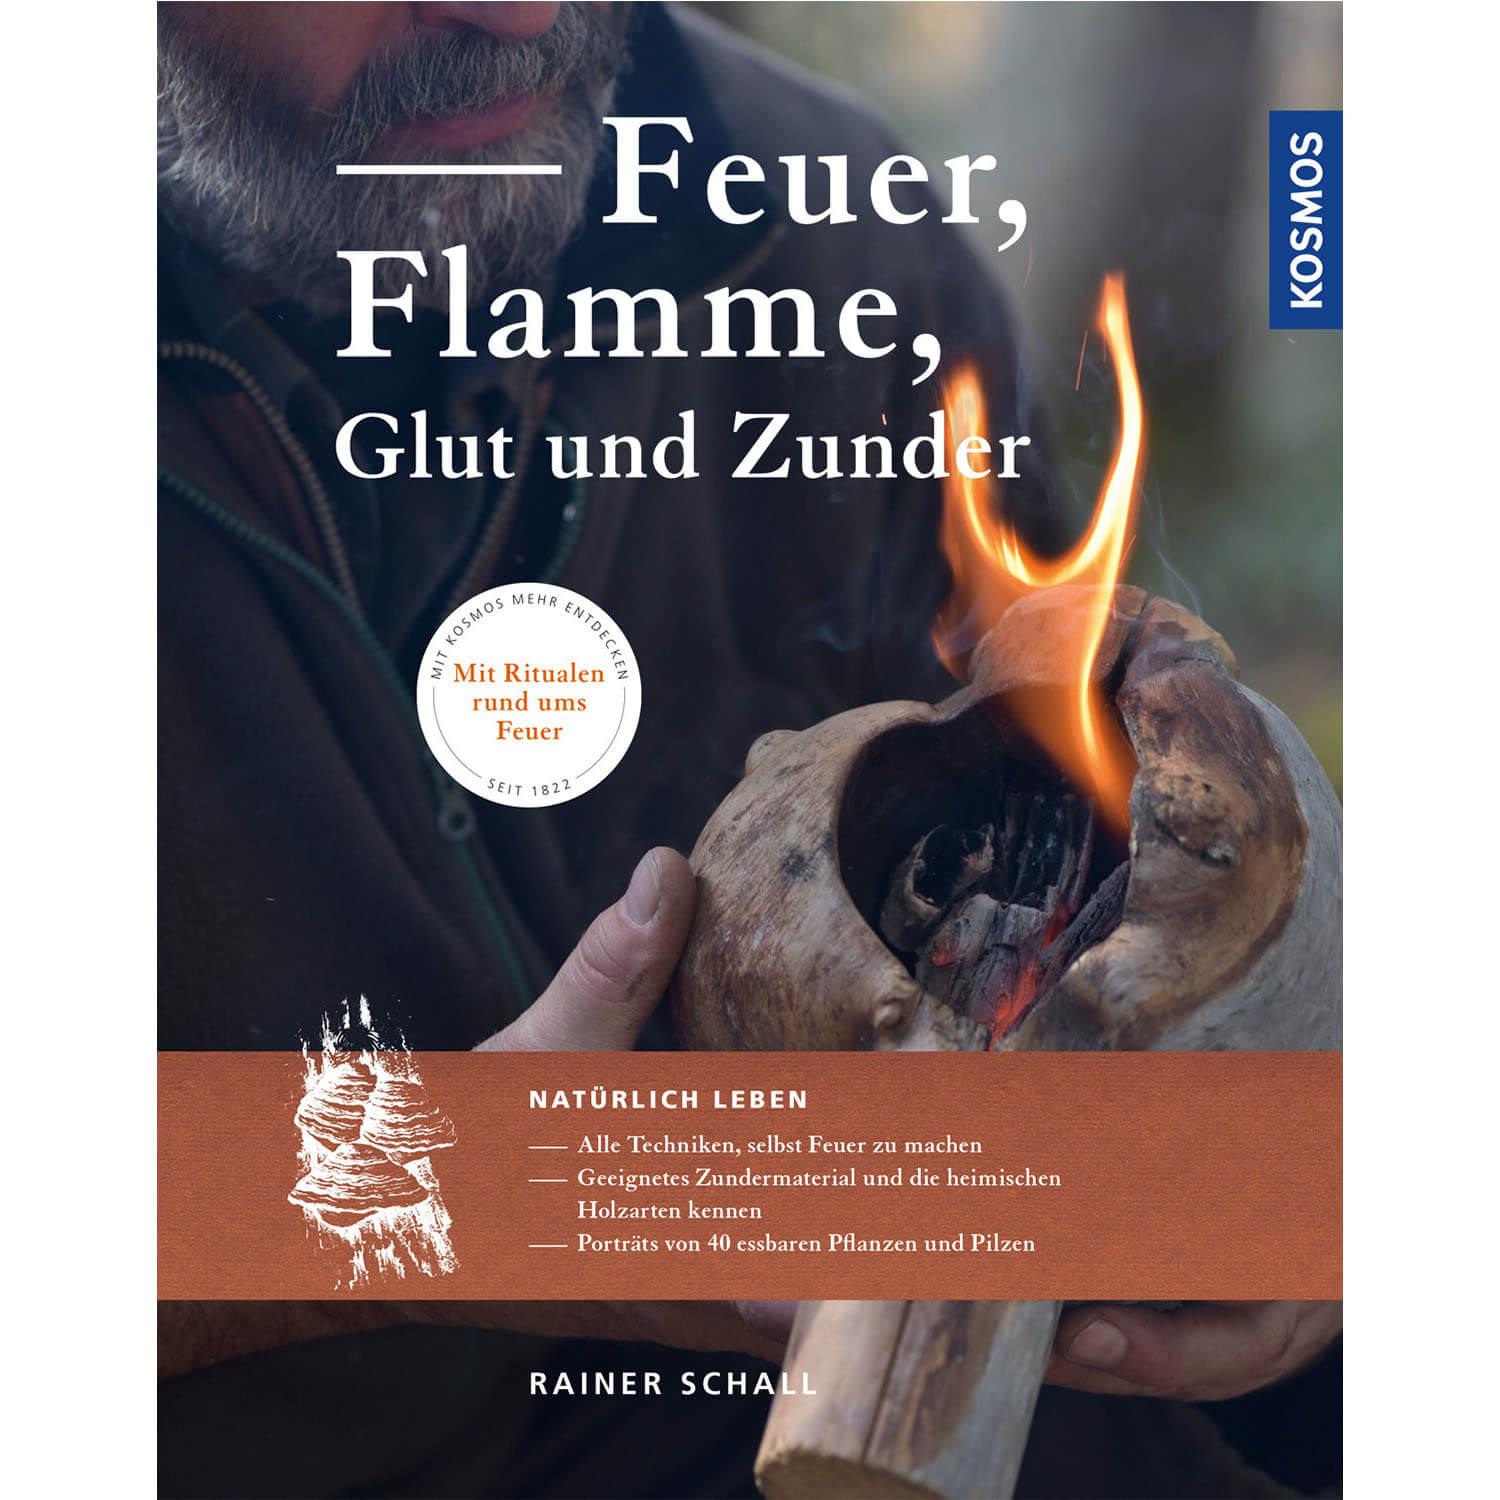 Feuer, Flamme, Glut und Zunder - Buch - Rainer Schall - Jagdbücher